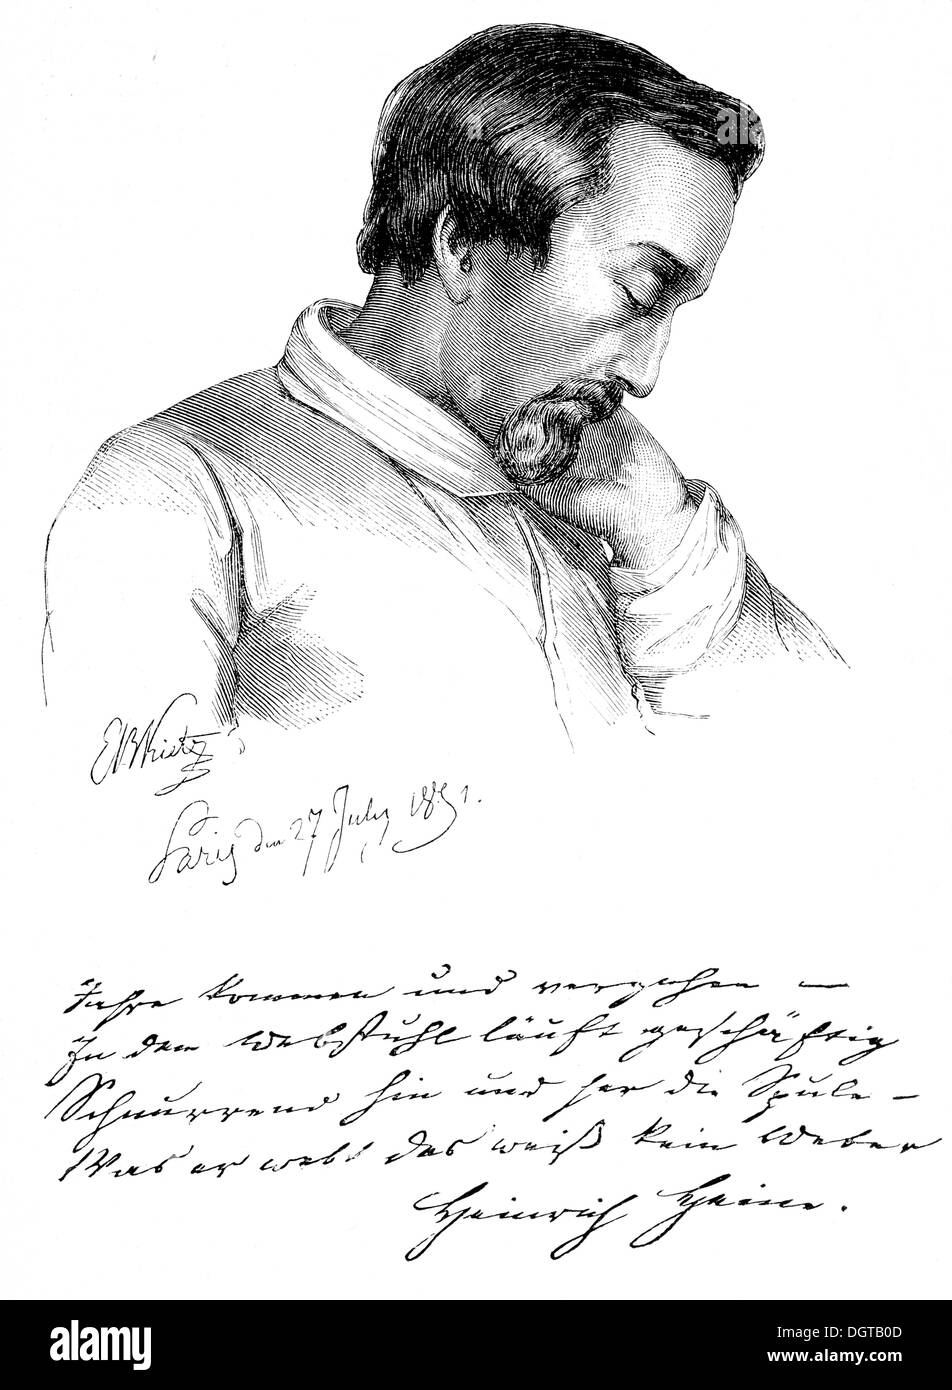 Heinrich Heine au cours de sa maladie, dessiné par Kietz à Paris en 1851, l'illustration historique de l'histoire de la littérature allemande à partir de Banque D'Images